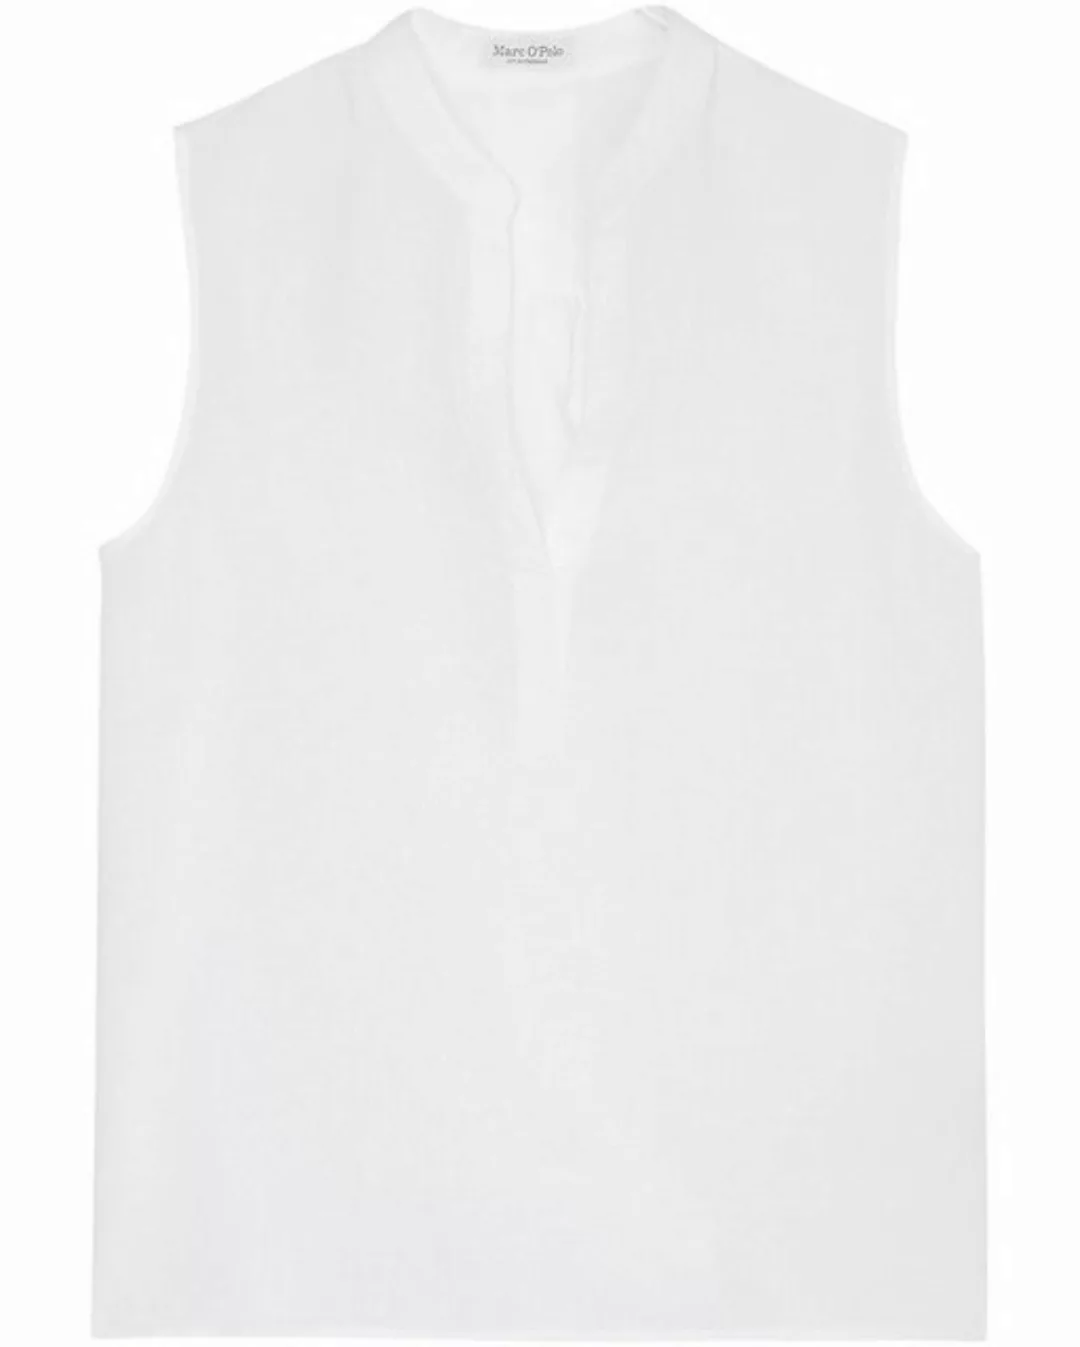 Marc O'Polo Klassische Bluse Woven Top, flared shape, v-neck wit günstig online kaufen